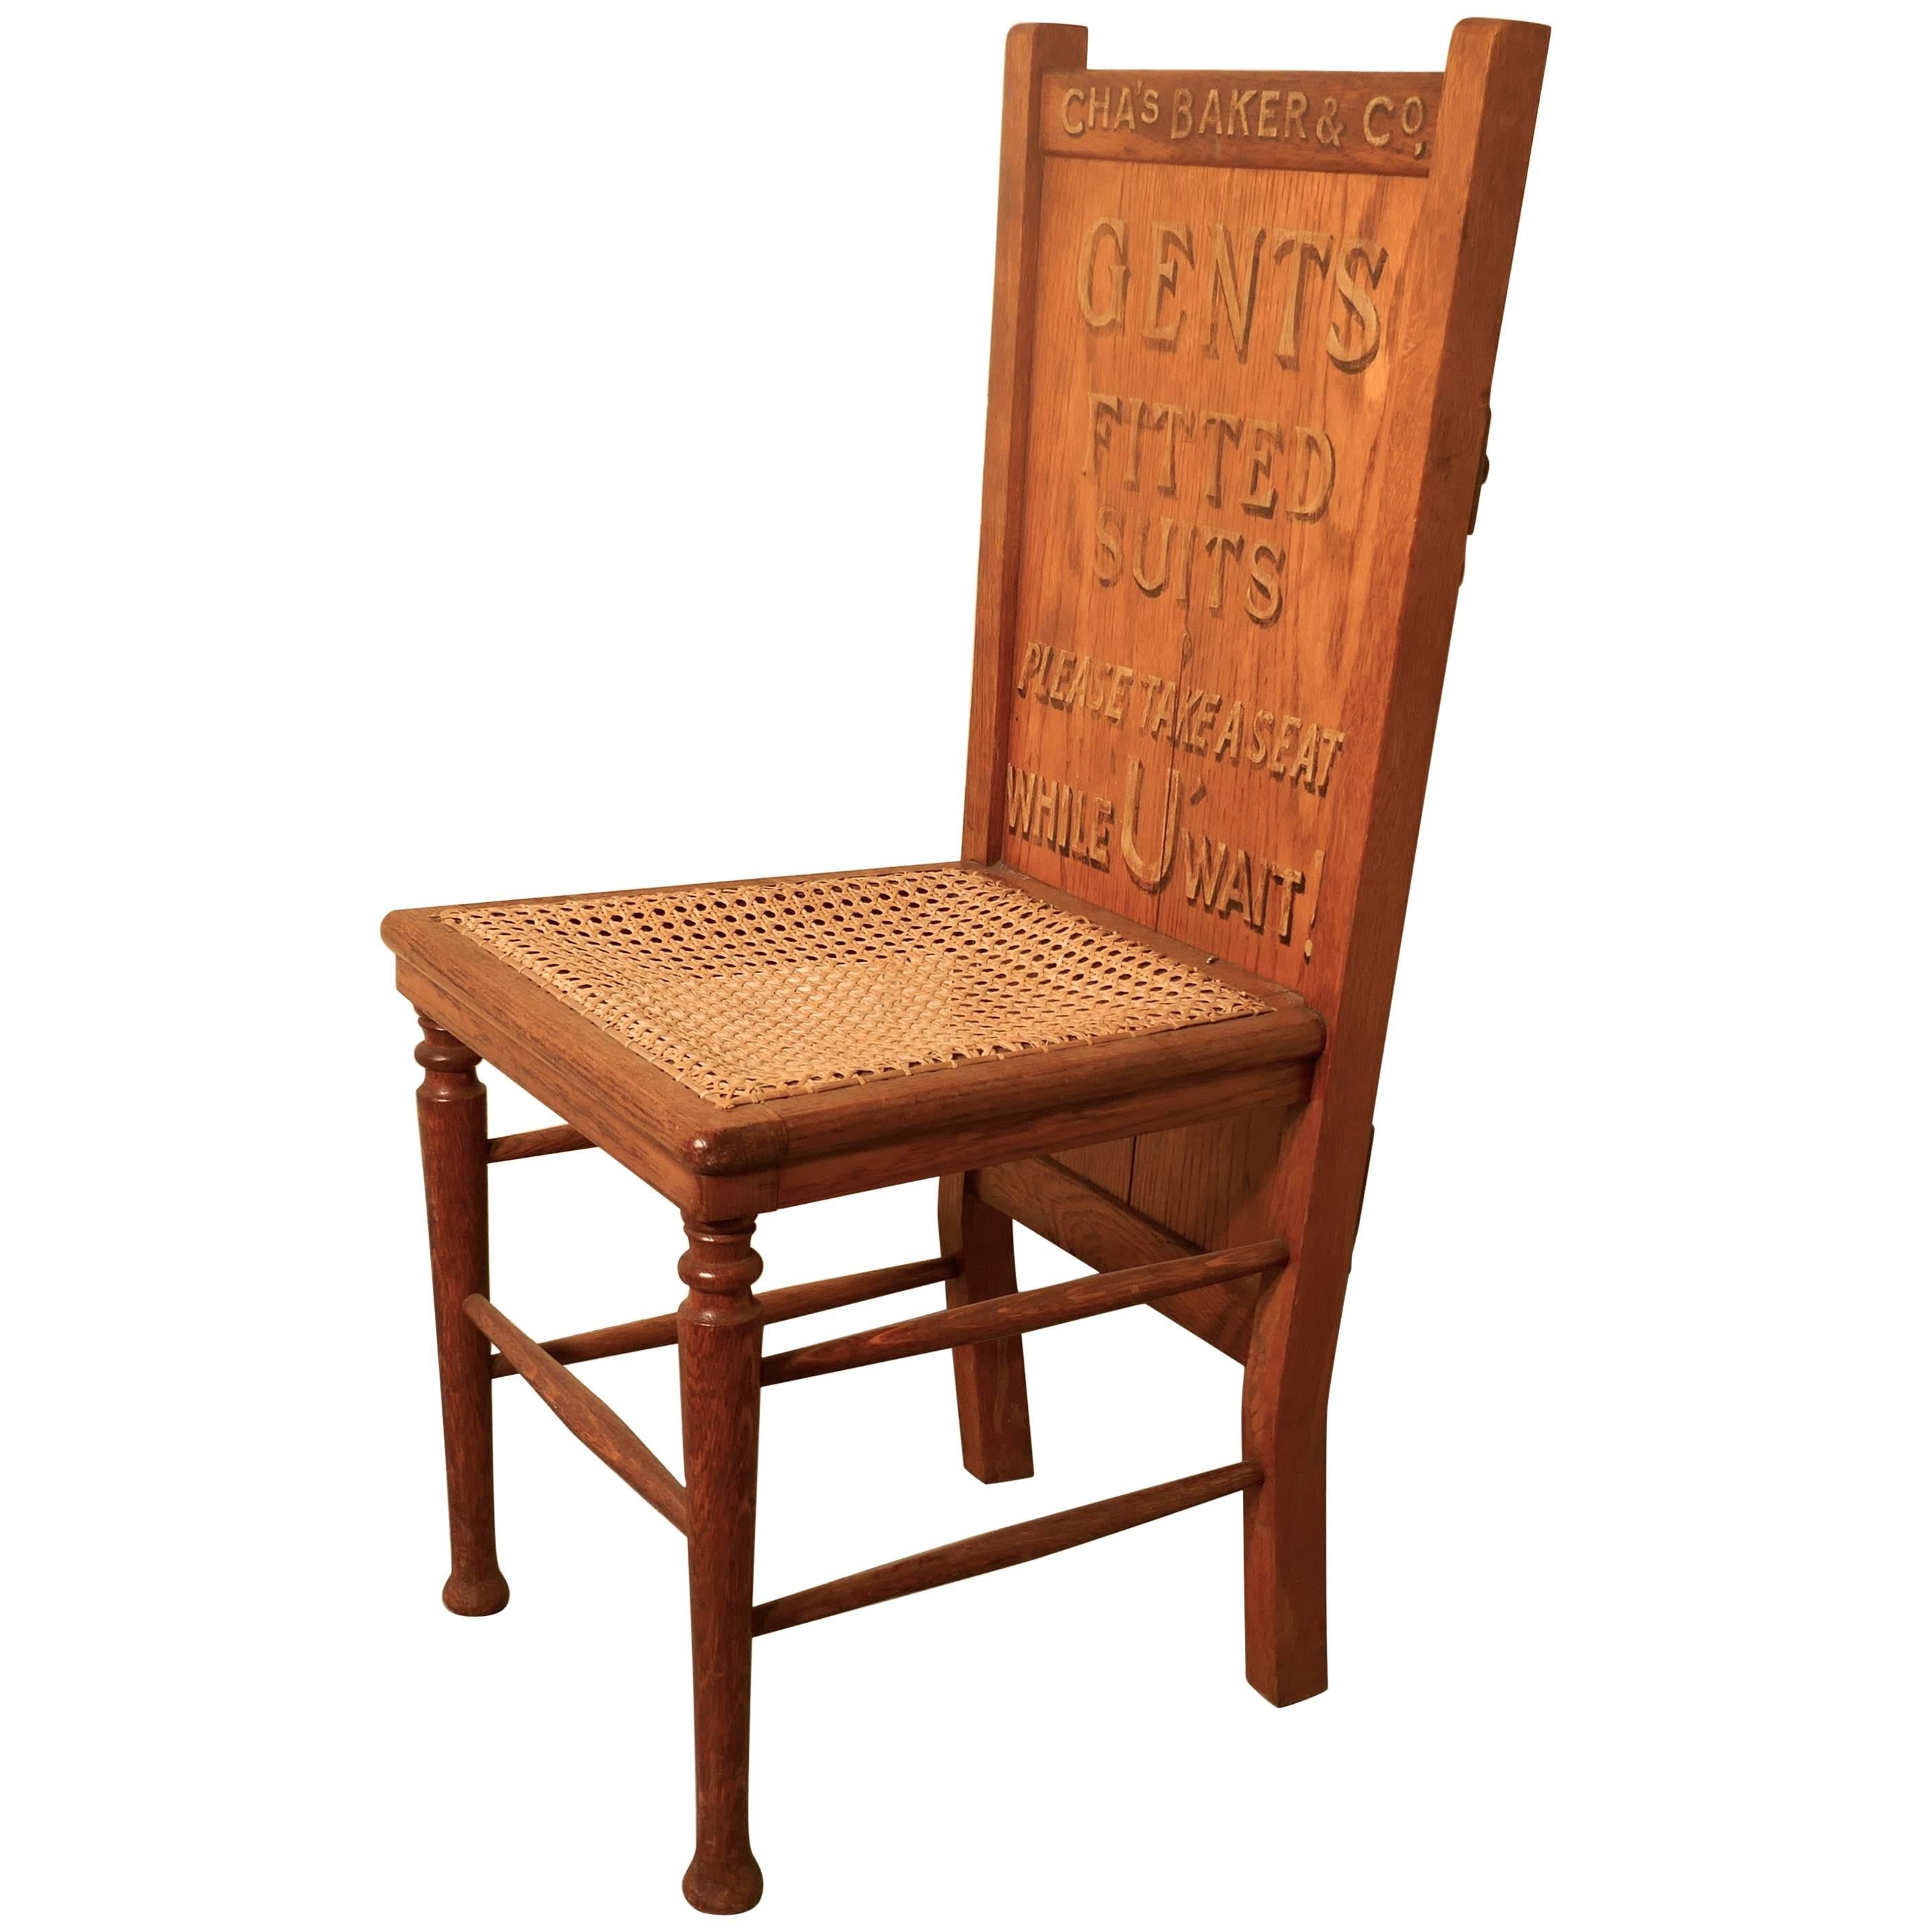 Victorian Oak Trouser Press Chair Gentleman’s Outfitter Shop Display